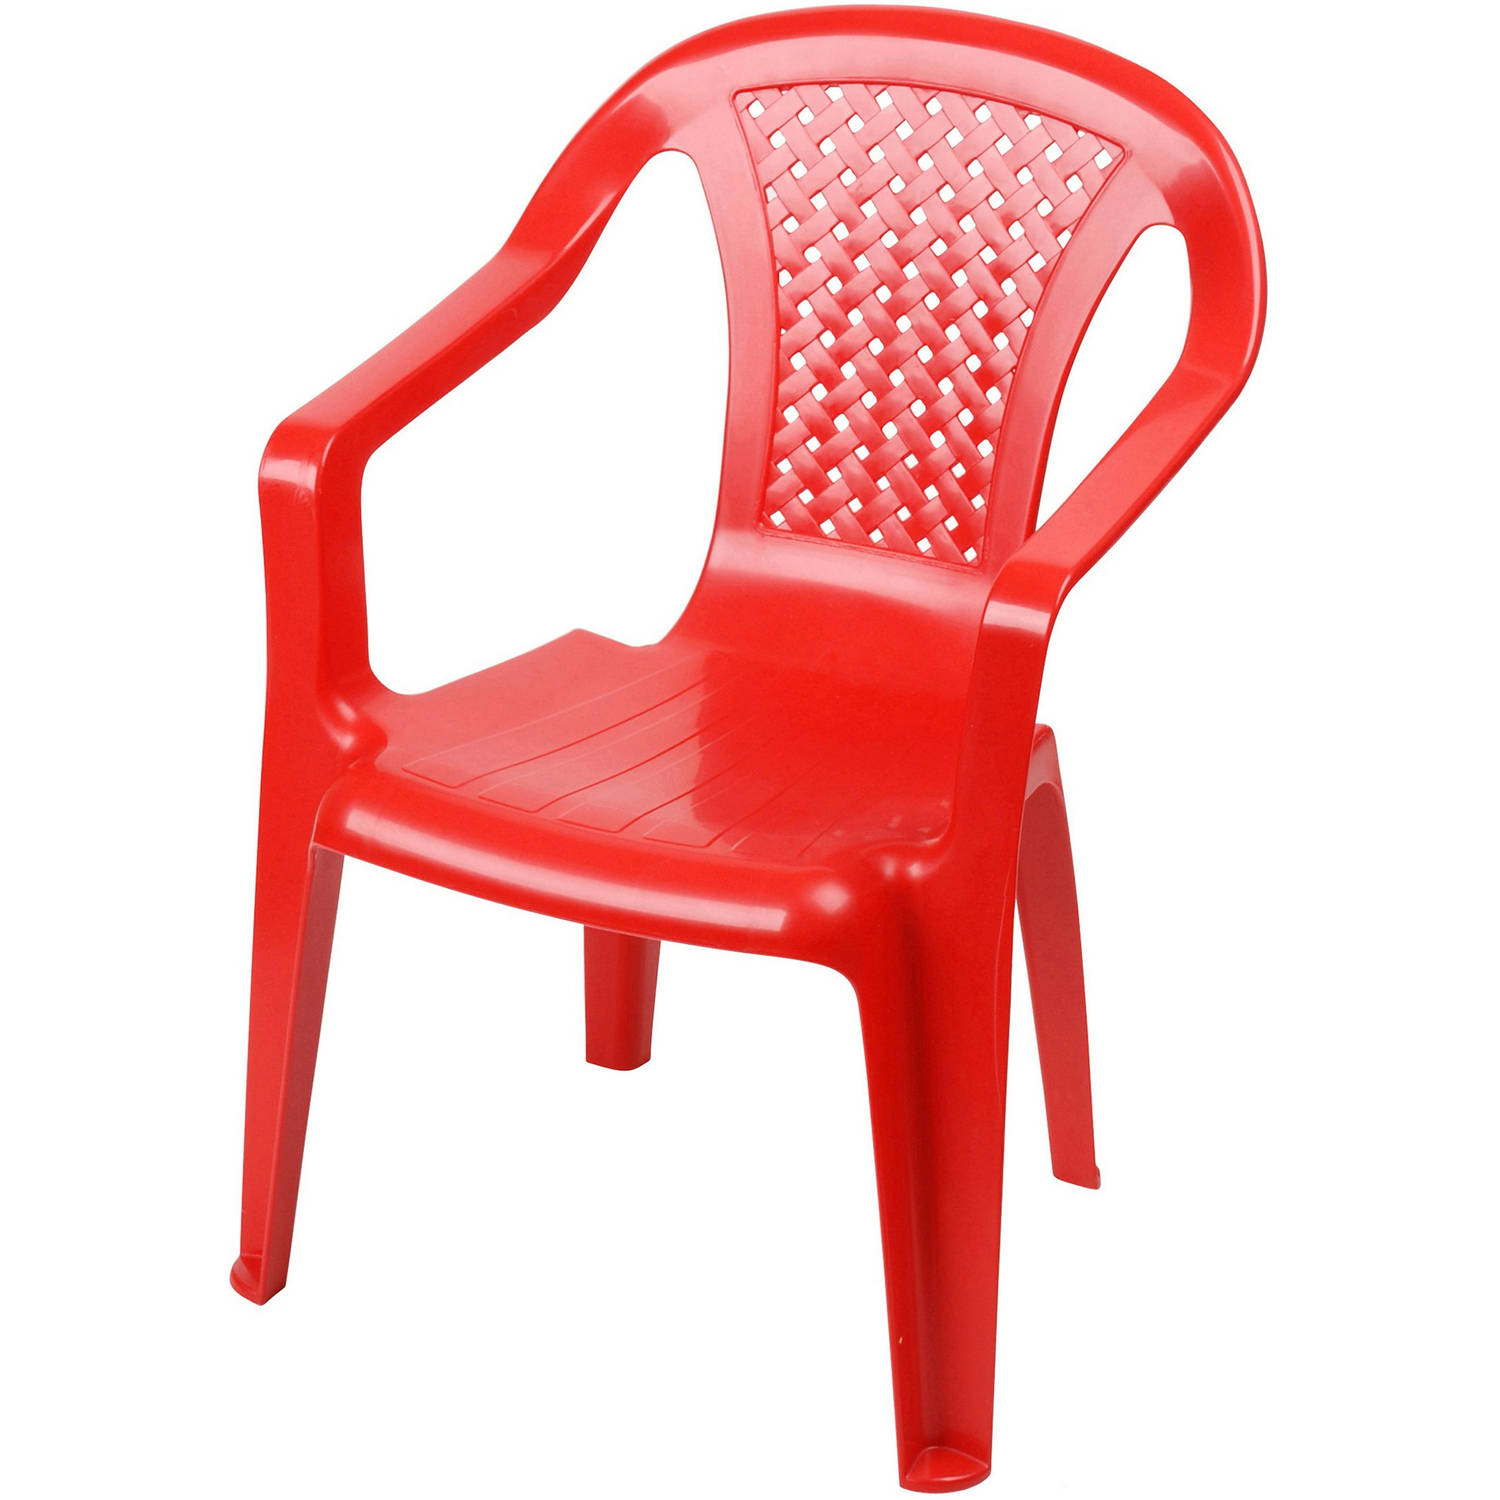 Sunnydays Kinderstoel - rood - kunststof - buiten/binnen - L37 x B35 x H52 cm - tuinstoelen